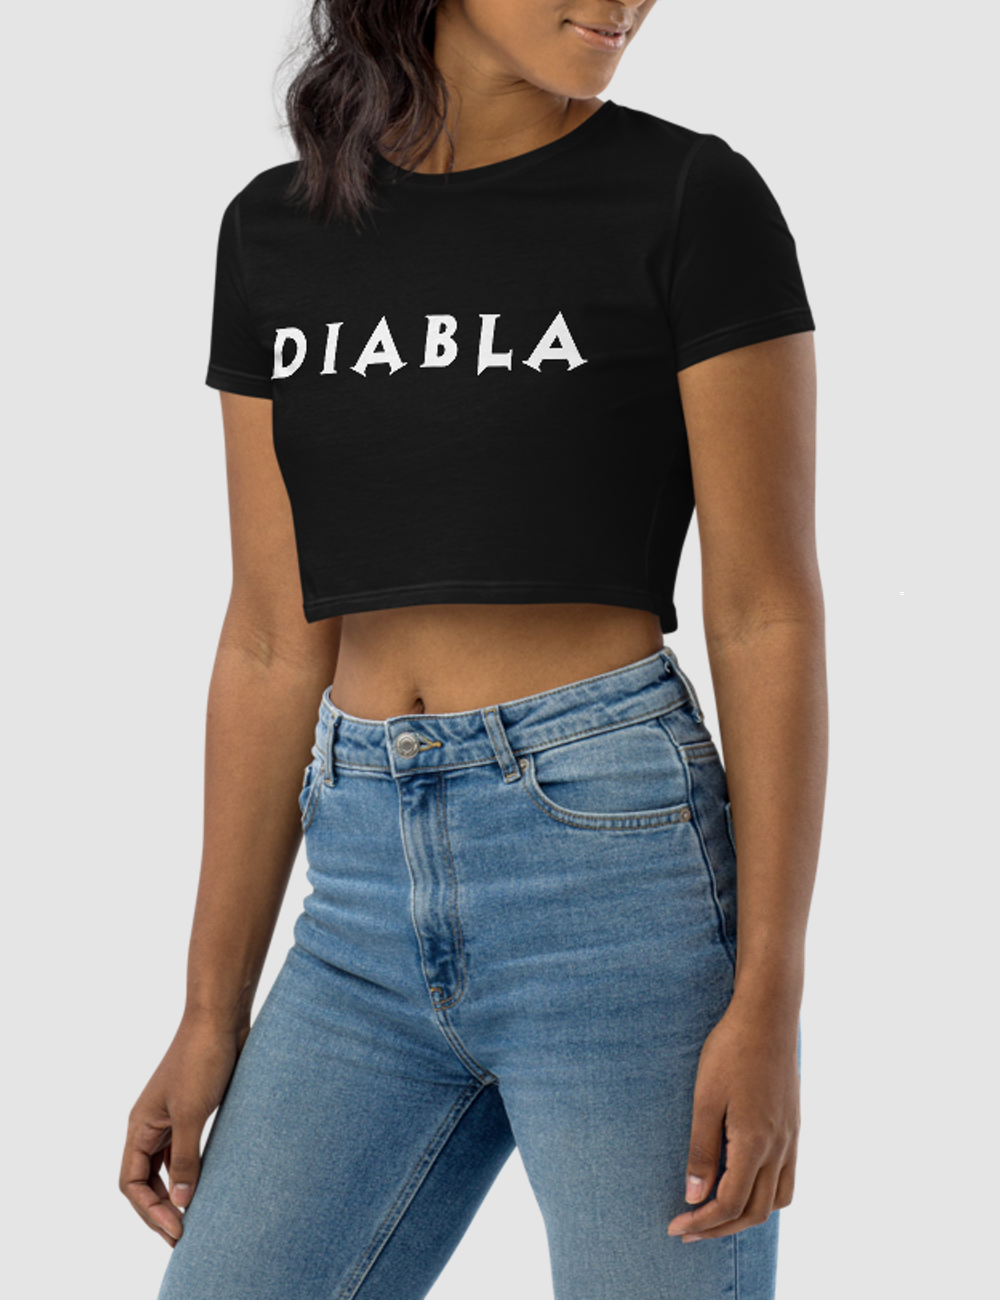 Diabla Women's Fitted Crop Top T-Shirt OniTakai